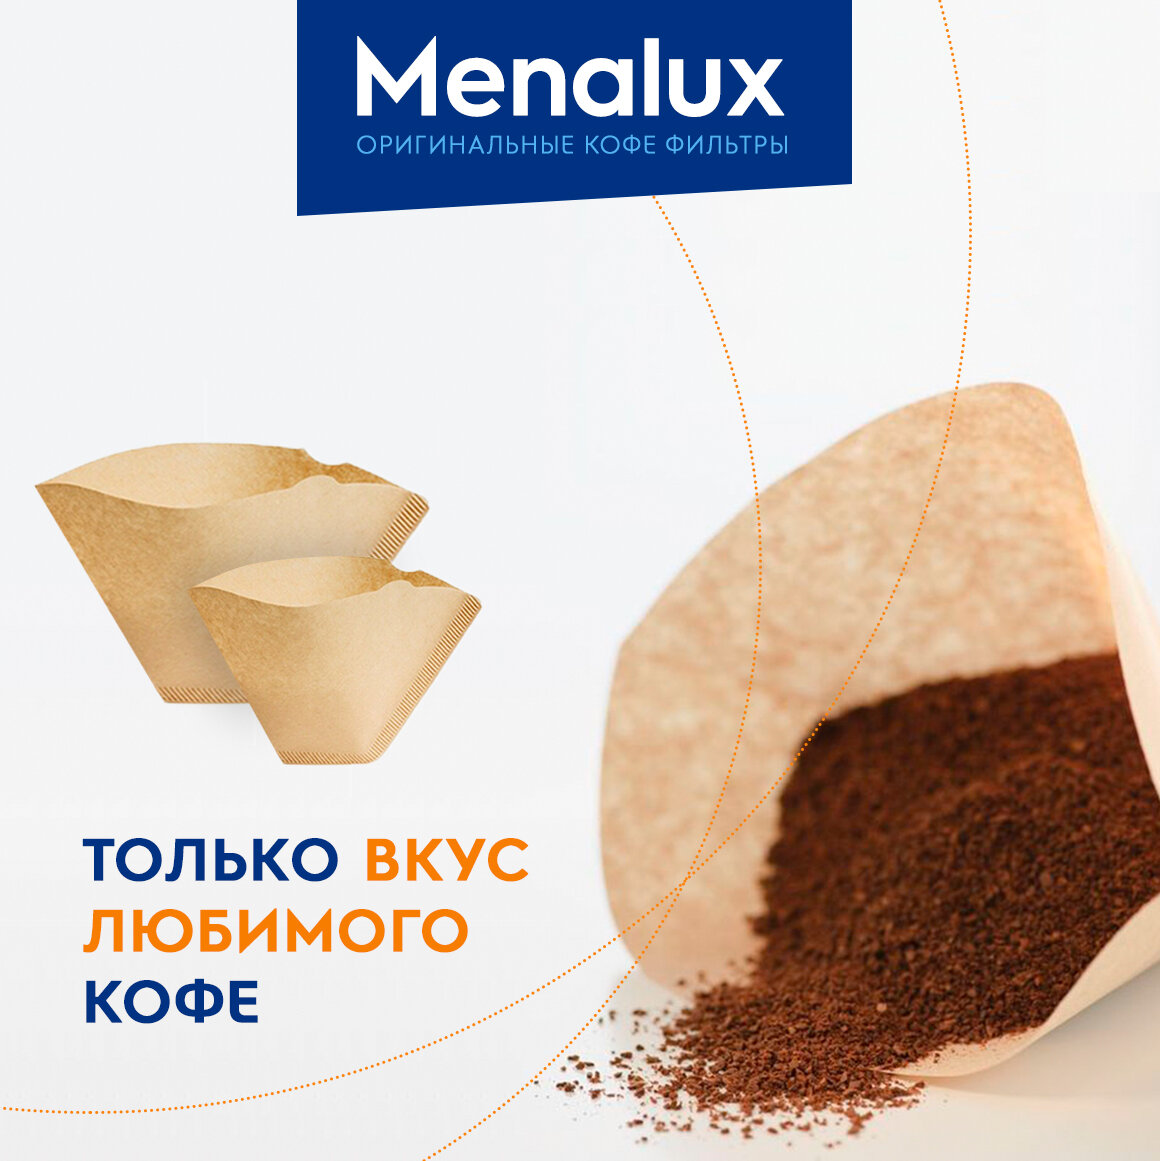 Фильтр для кофеварки Menalux - фото №4